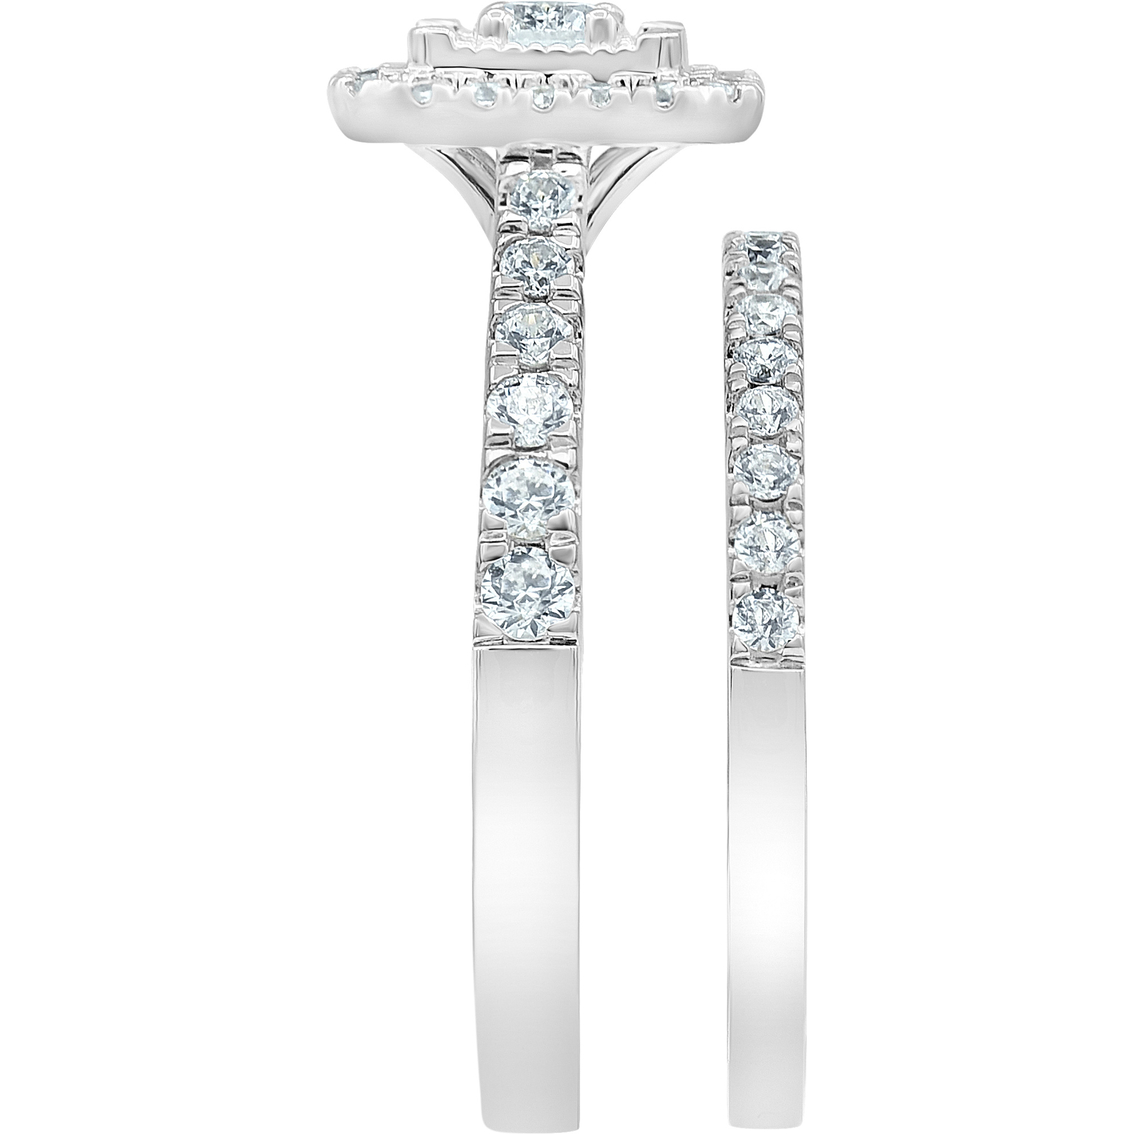 10K White Gold 1 CTW Emerald Shape Diamond Bridal Set - Image 2 of 4